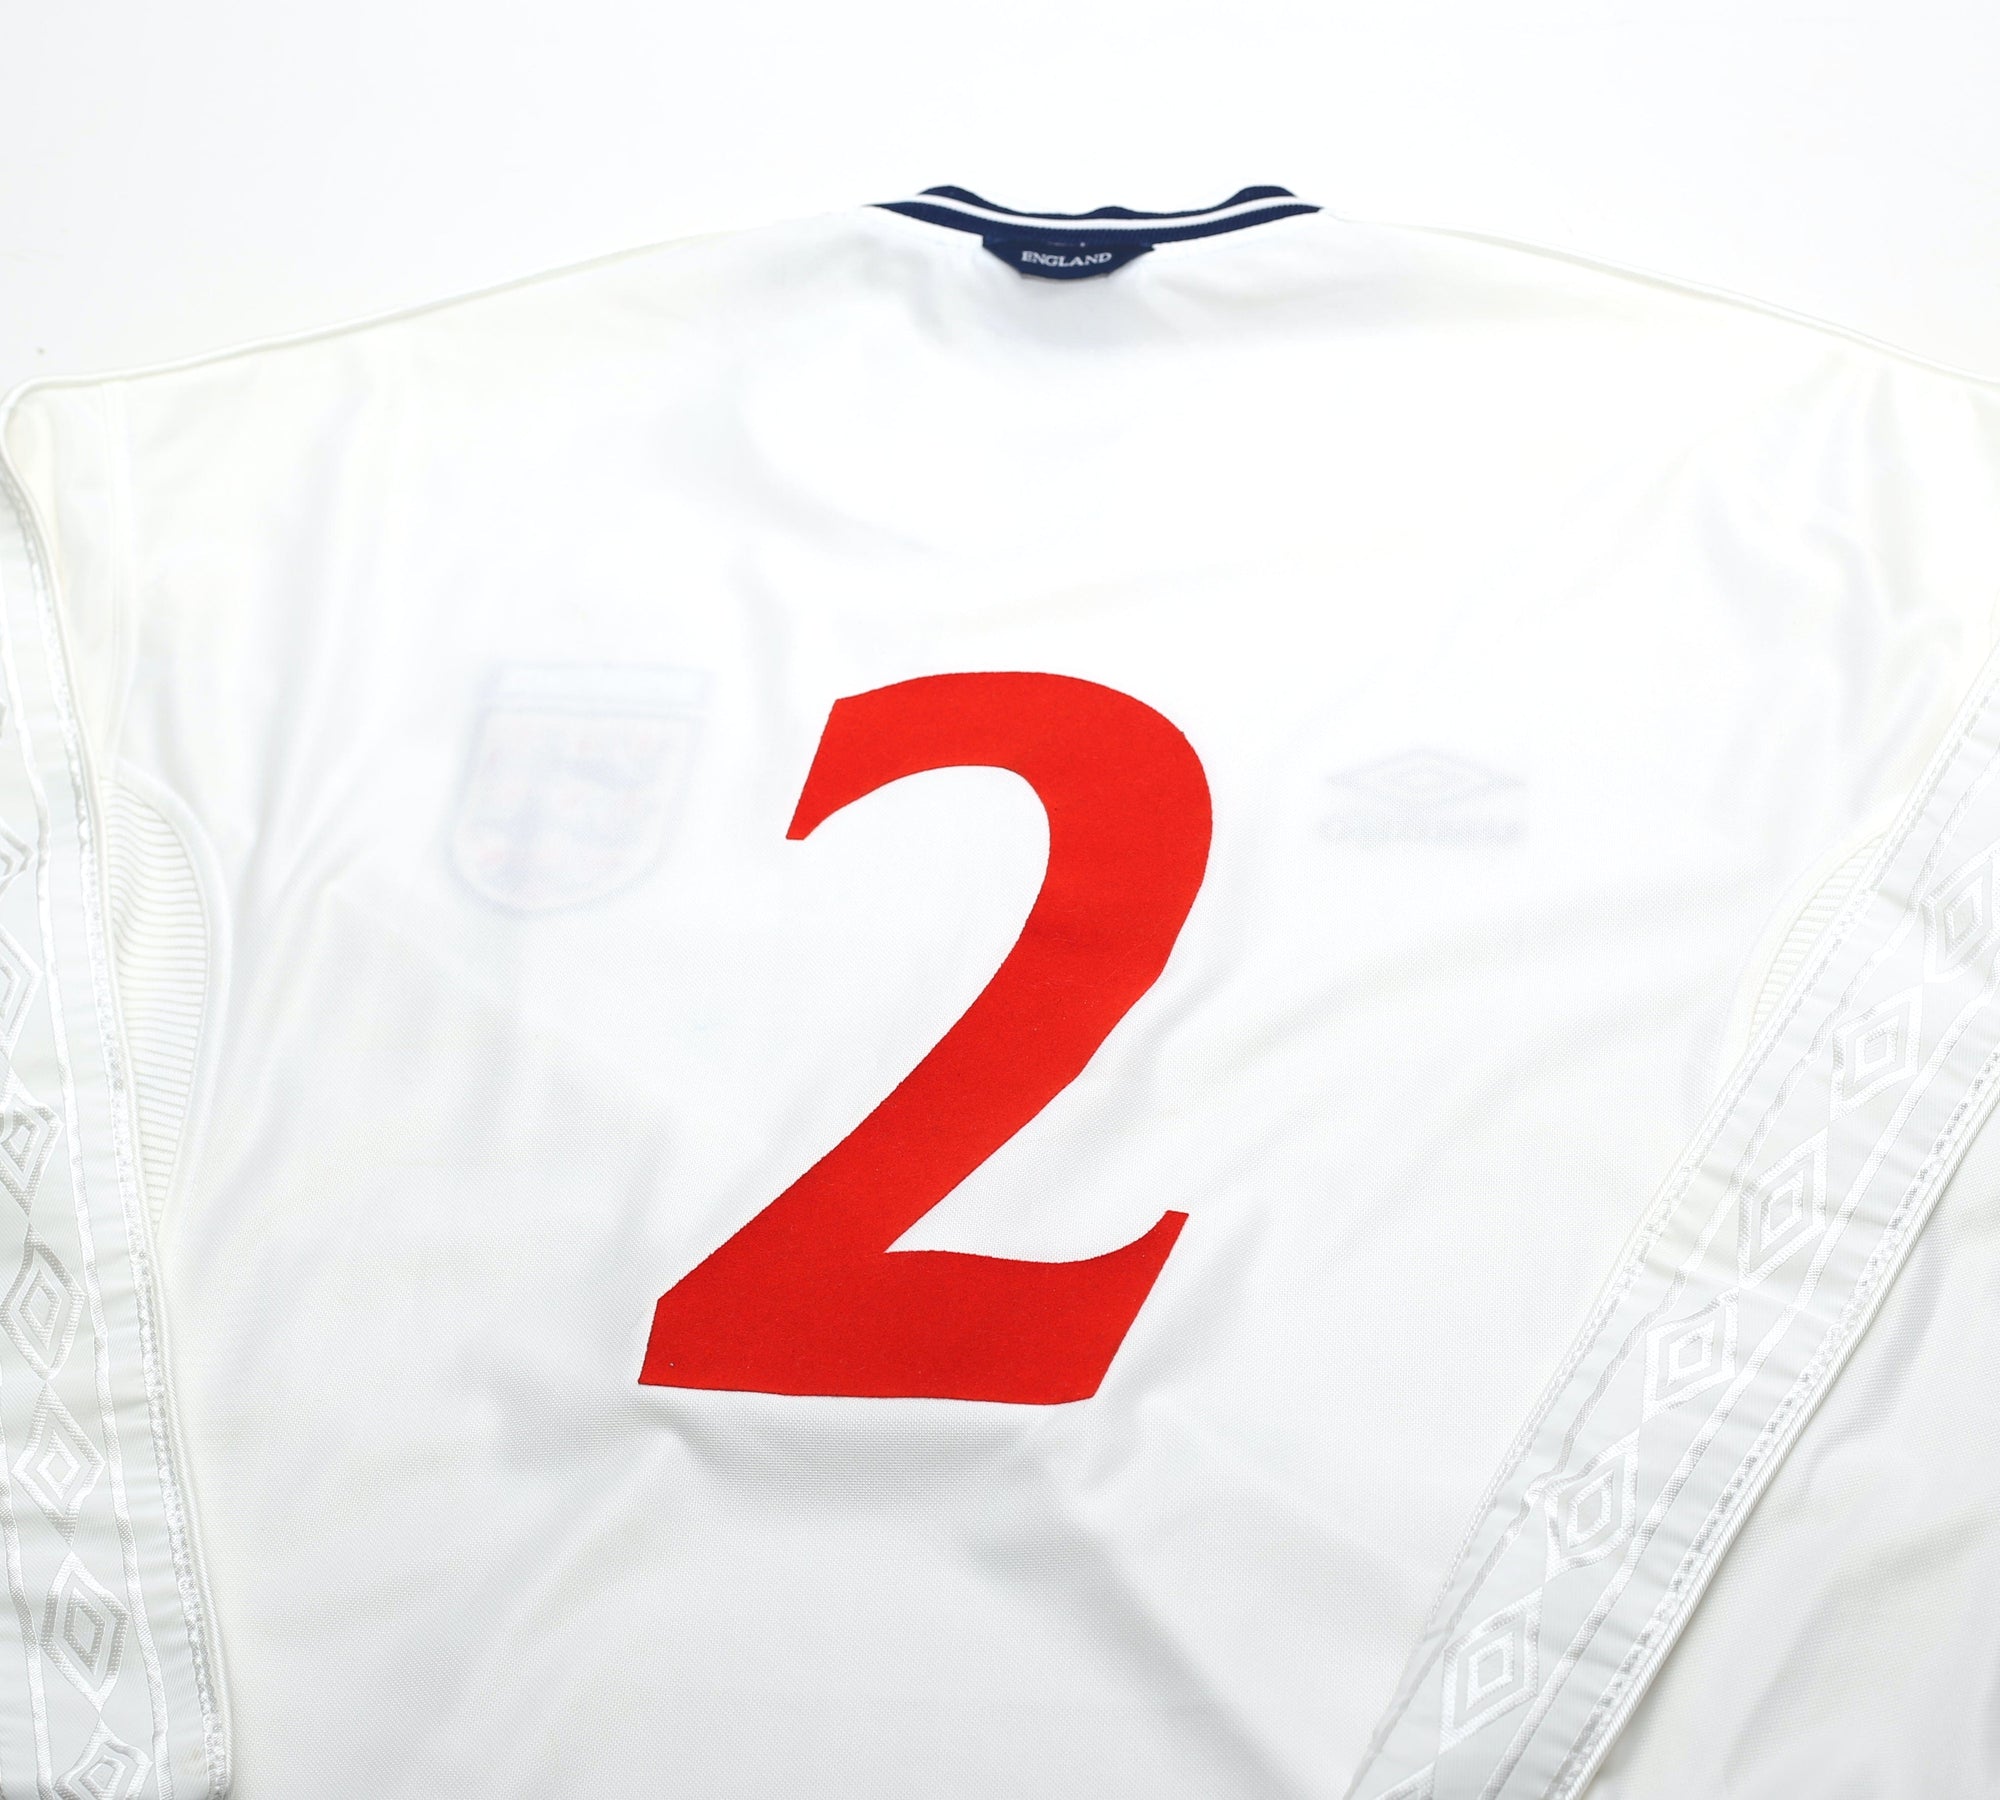 1999/01 #2 ENGLAND Vintage Umbro Long Sleeve Home Football Shirt (L) Euro 2000